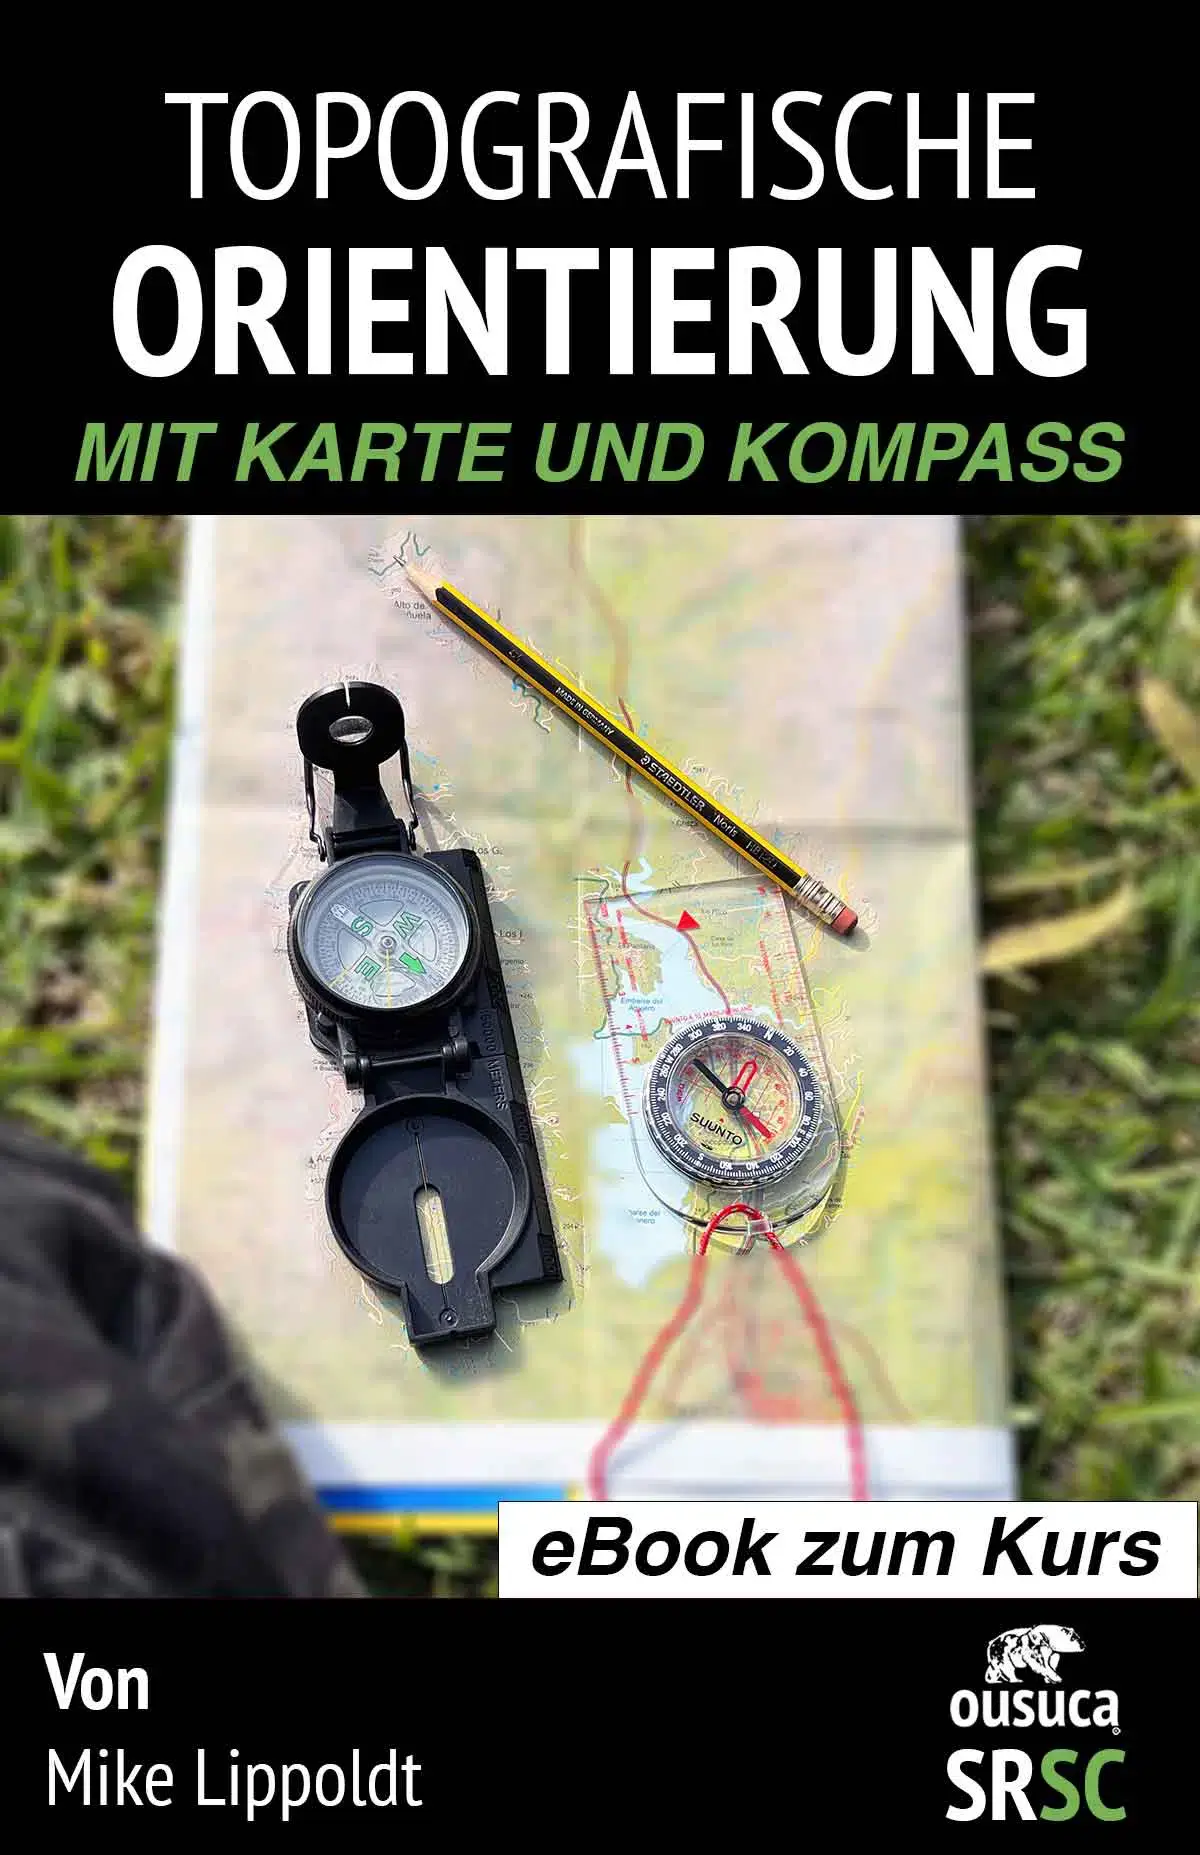 Topografische Orientierung mit Karte und Kompass lernen - kompletter Videokurs 1